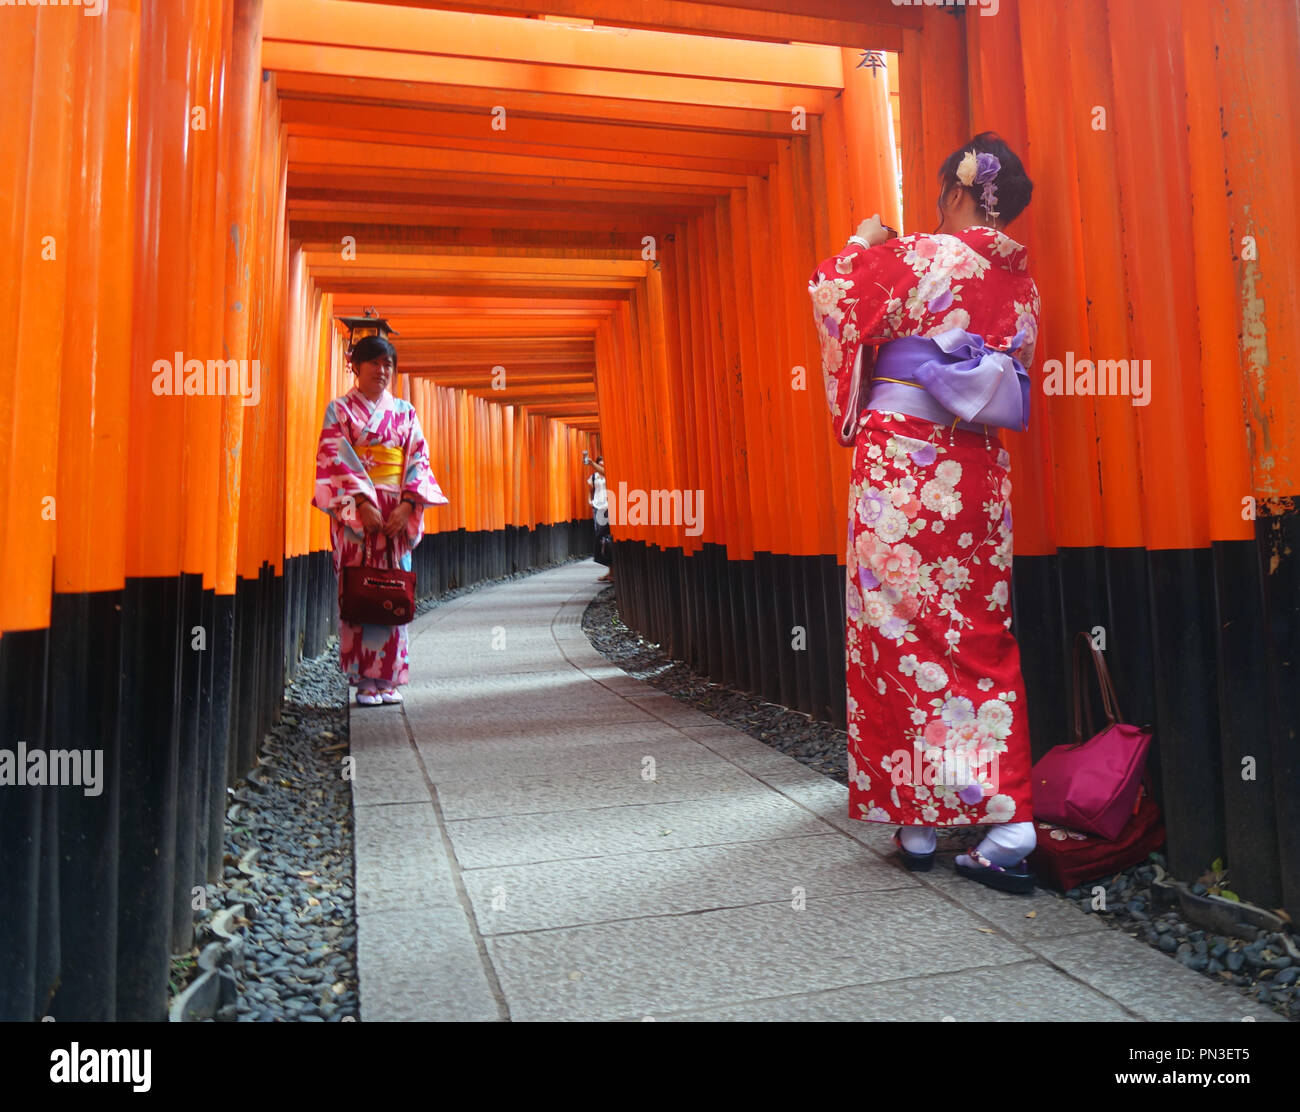 Mädchen im Kimono fotografieren einander zwischen roten torii Tore, Fushimi Inari Schrein, Kyoto, Japan. Keine PR oder MR. Stockfoto